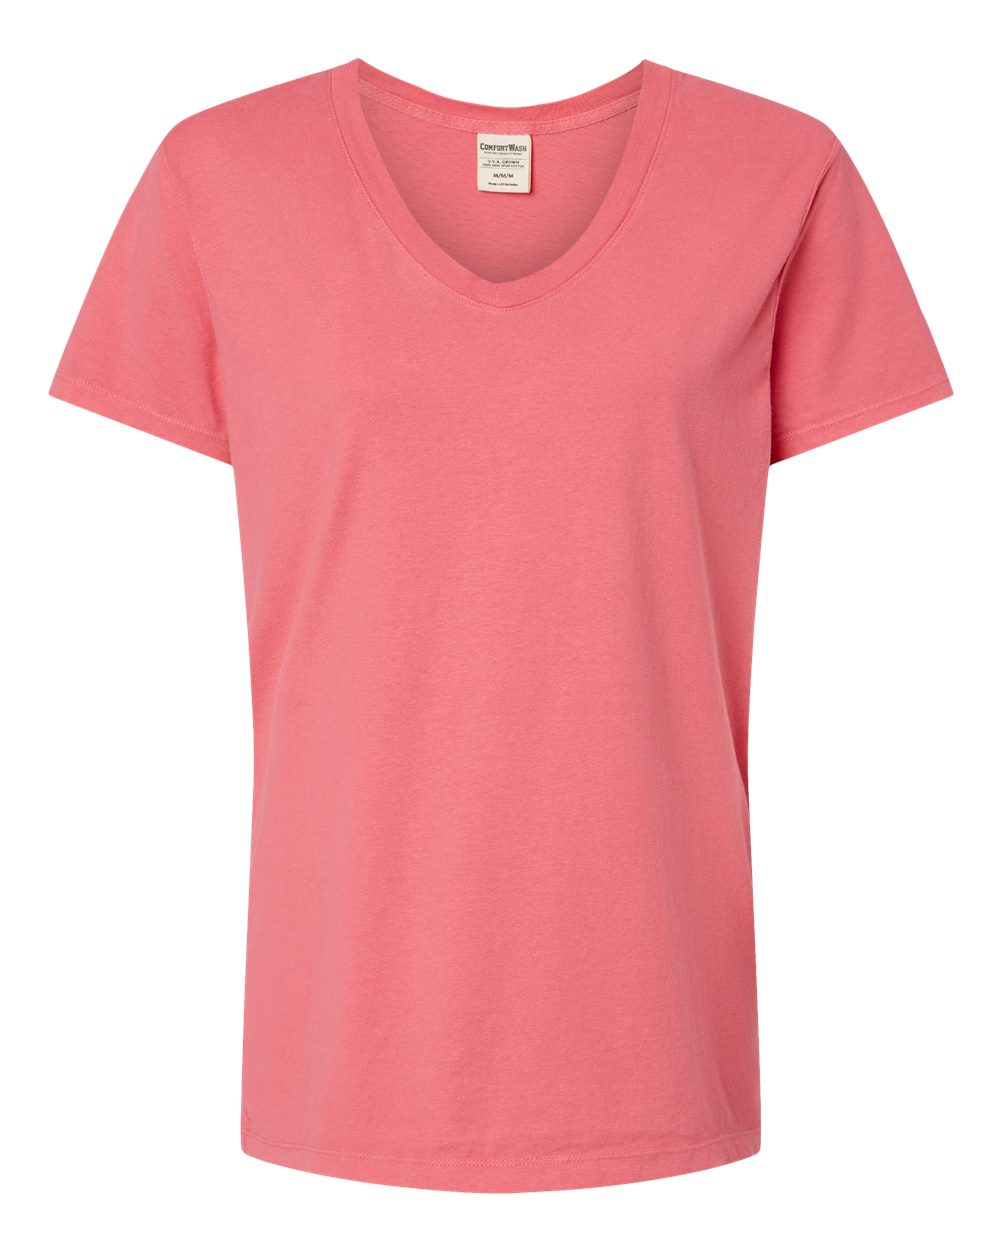 Hanes Women's Garment Dyed V-Neck T-Shirt